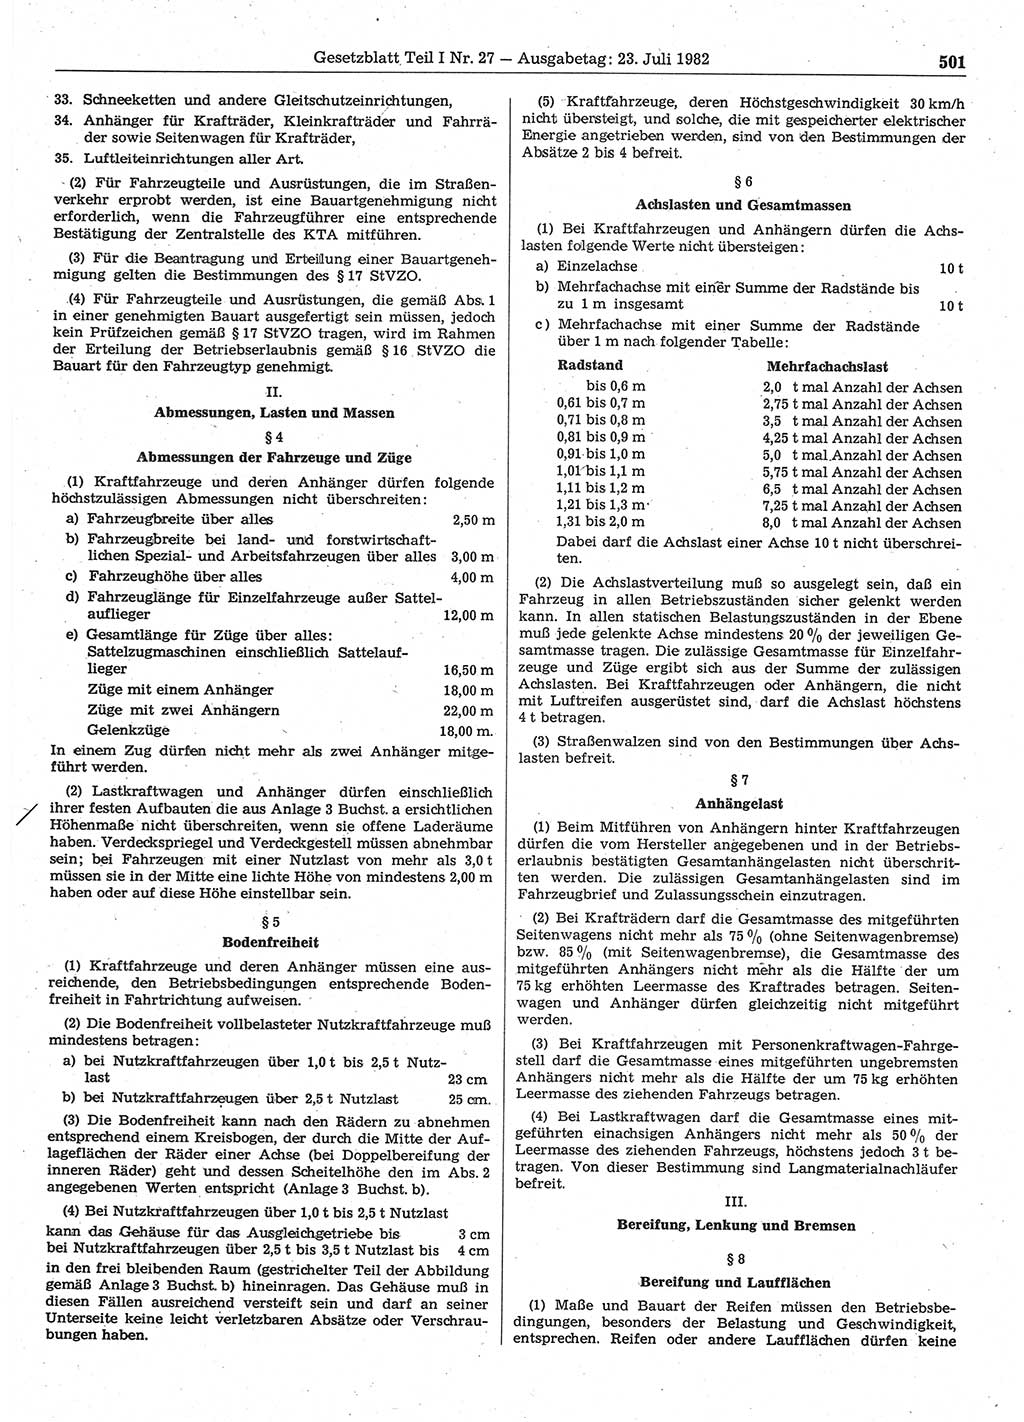 Gesetzblatt (GBl.) der Deutschen Demokratischen Republik (DDR) Teil Ⅰ 1982, Seite 501 (GBl. DDR Ⅰ 1982, S. 501)